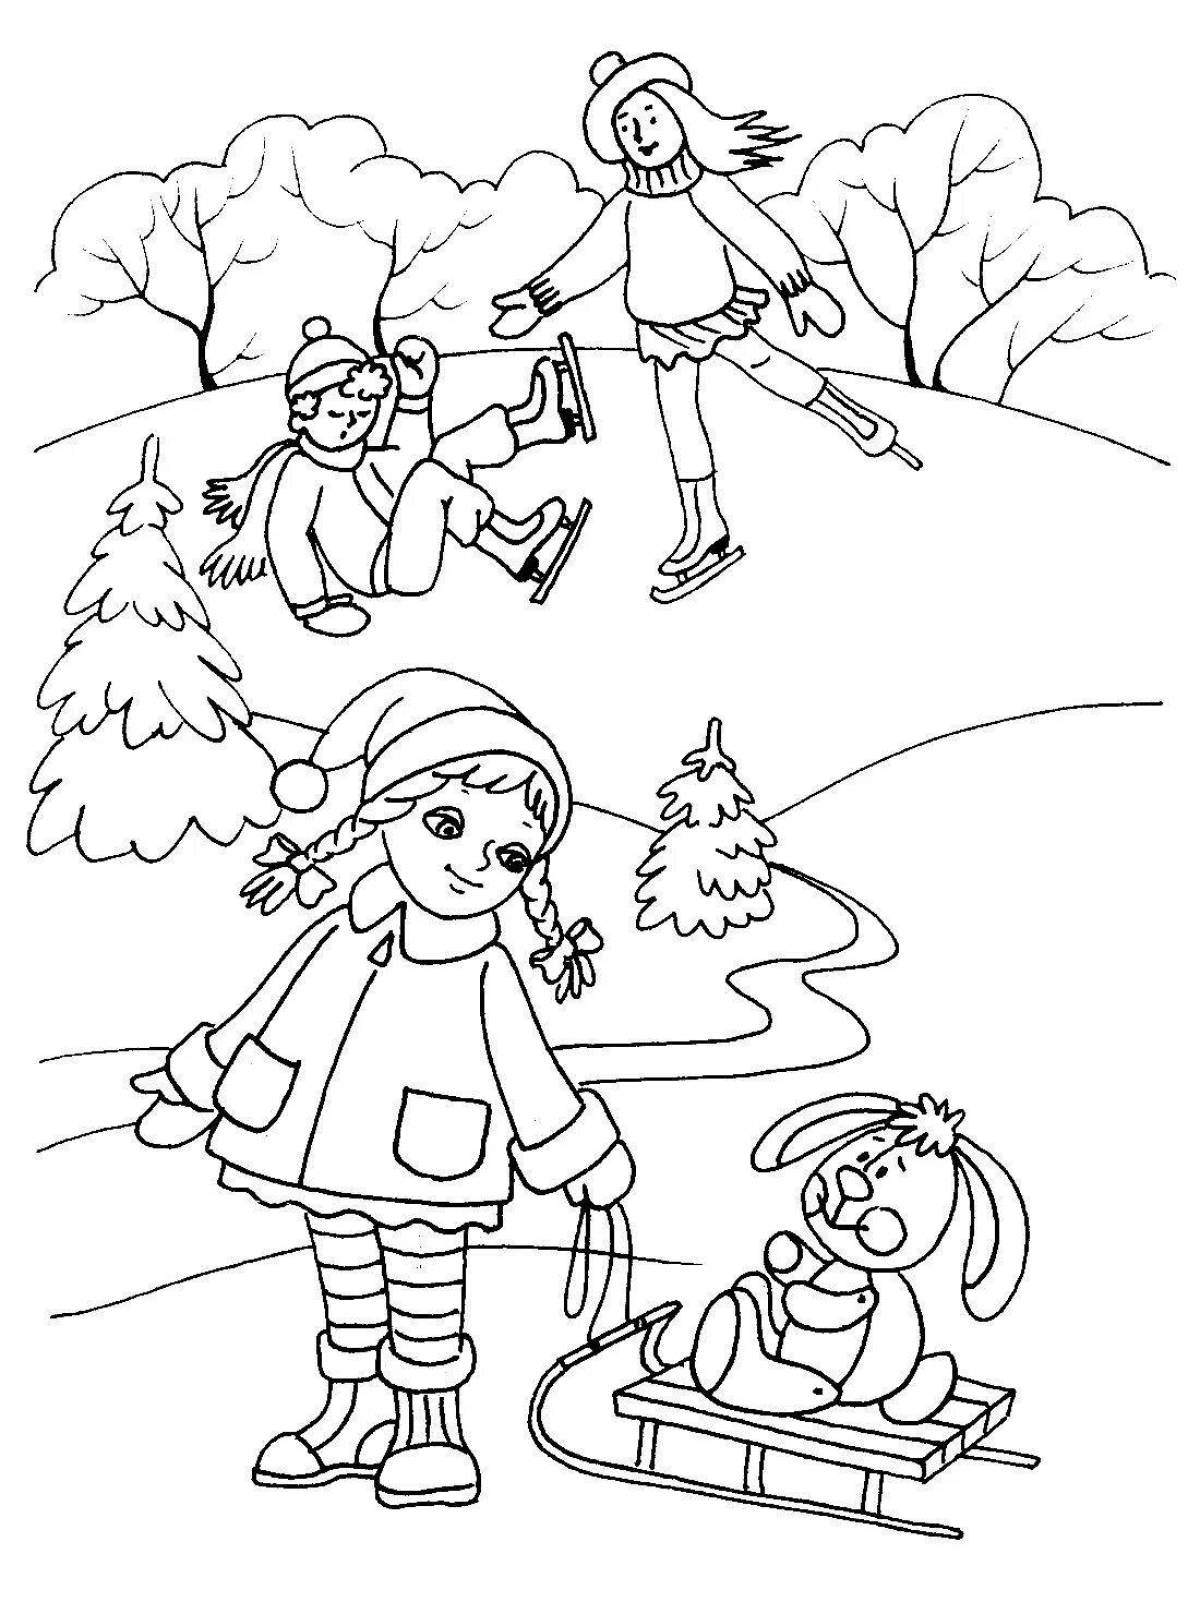 Children outdoors in winter #8